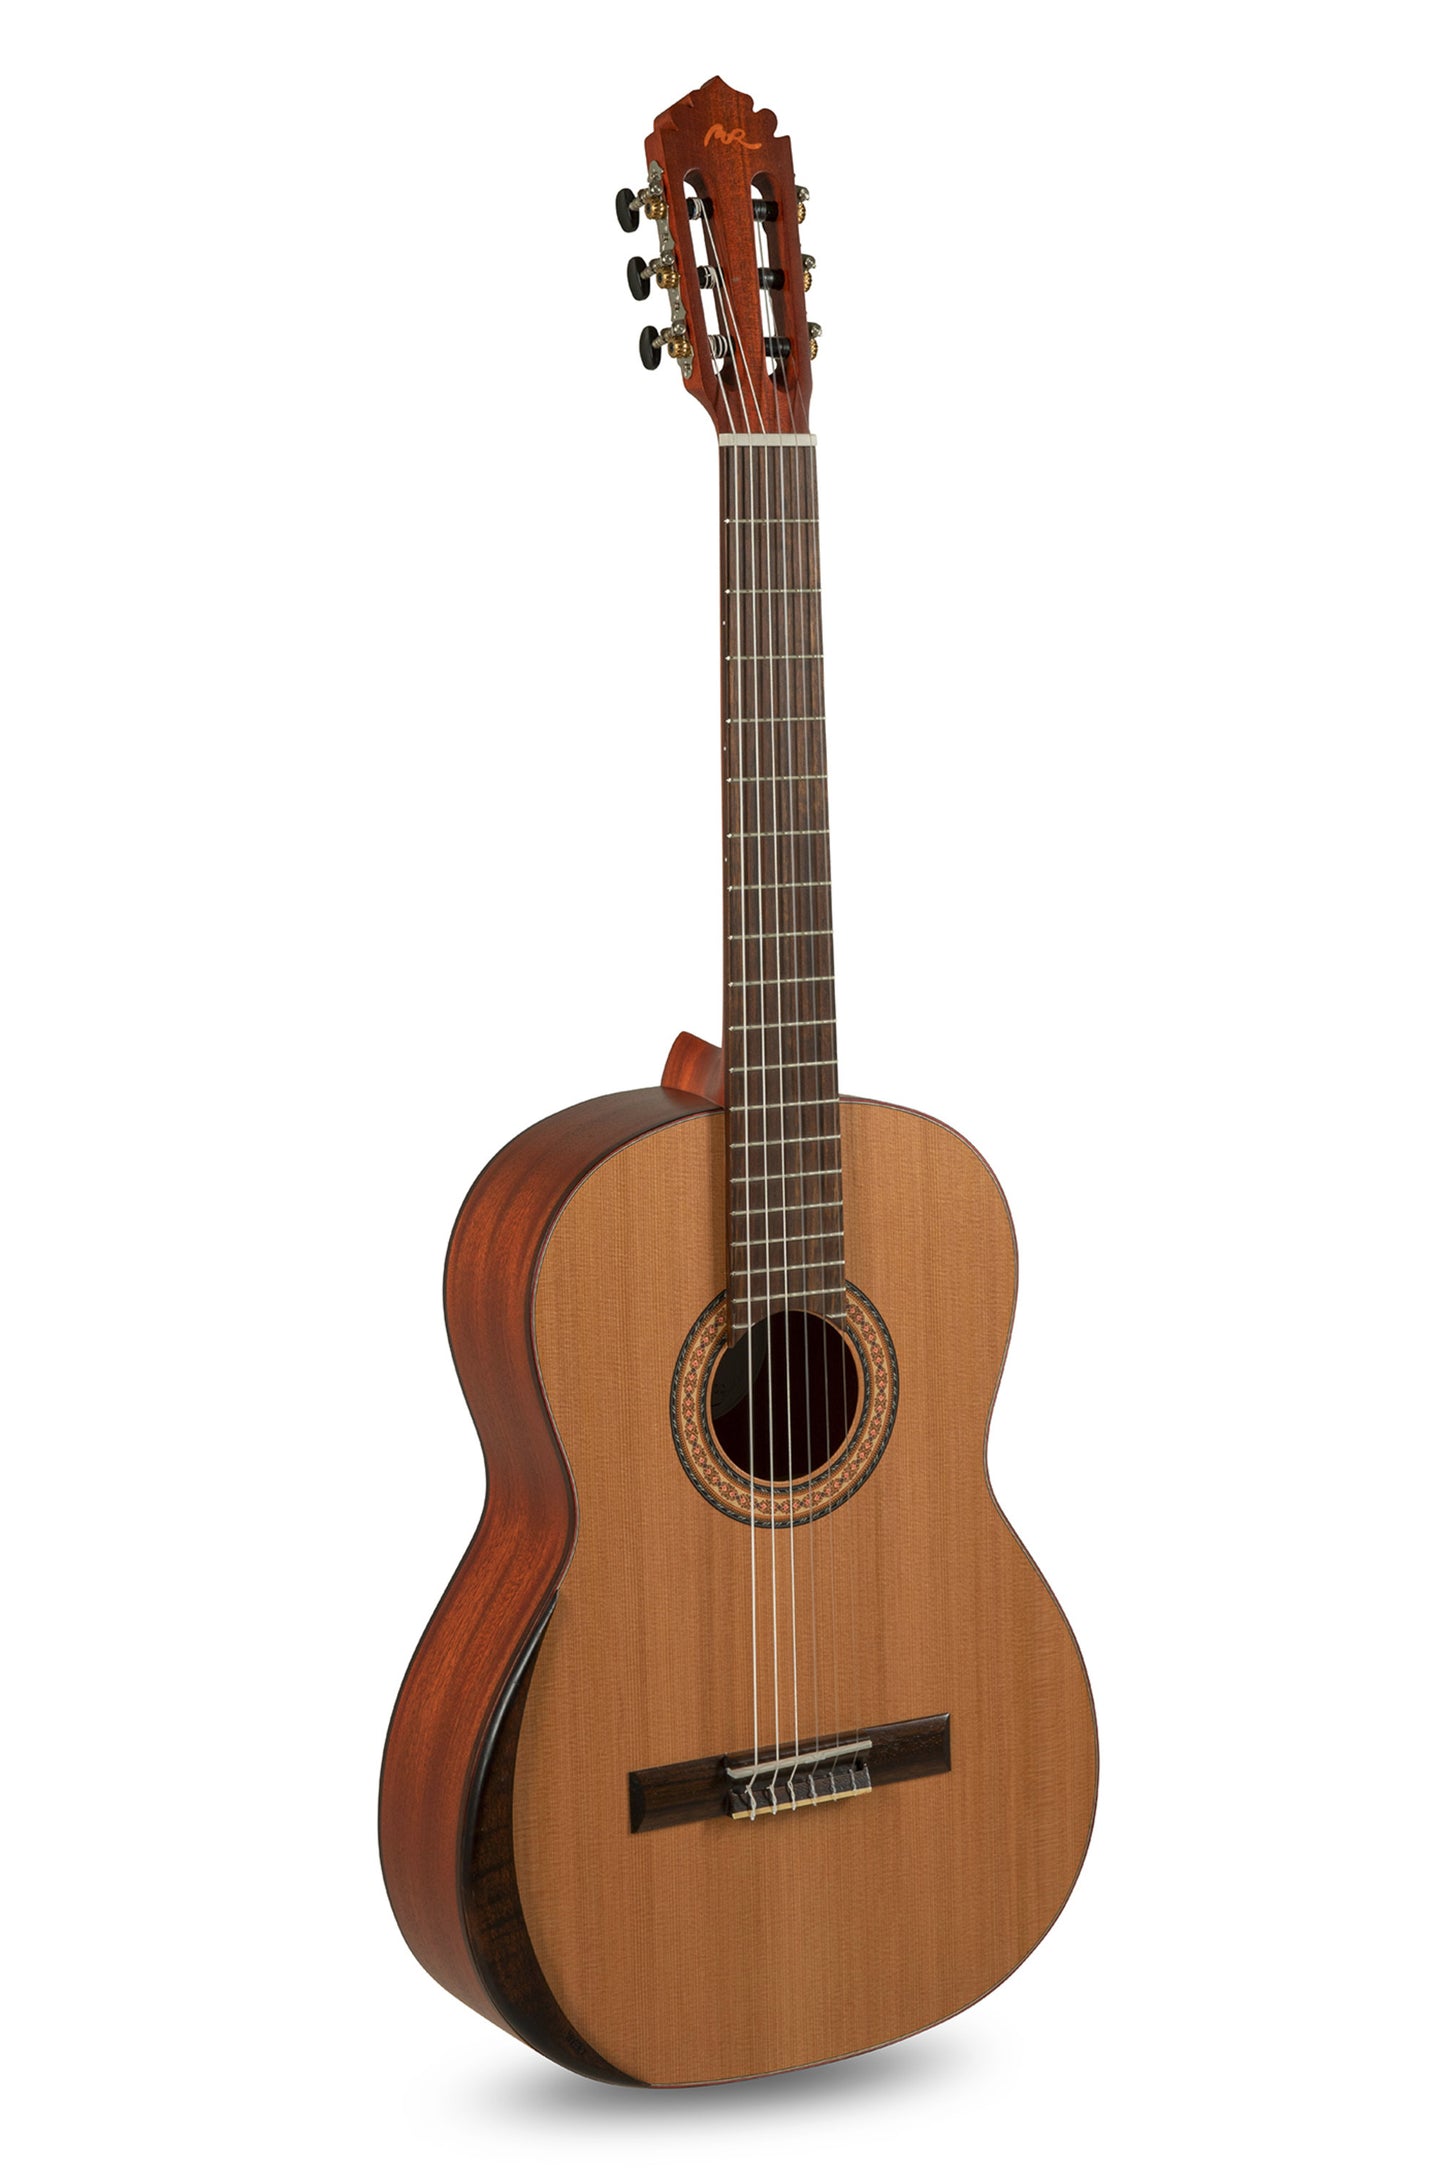 Manuel Rodríguez T-65 Tradicion Classical Guitar - Solid Cedar Top